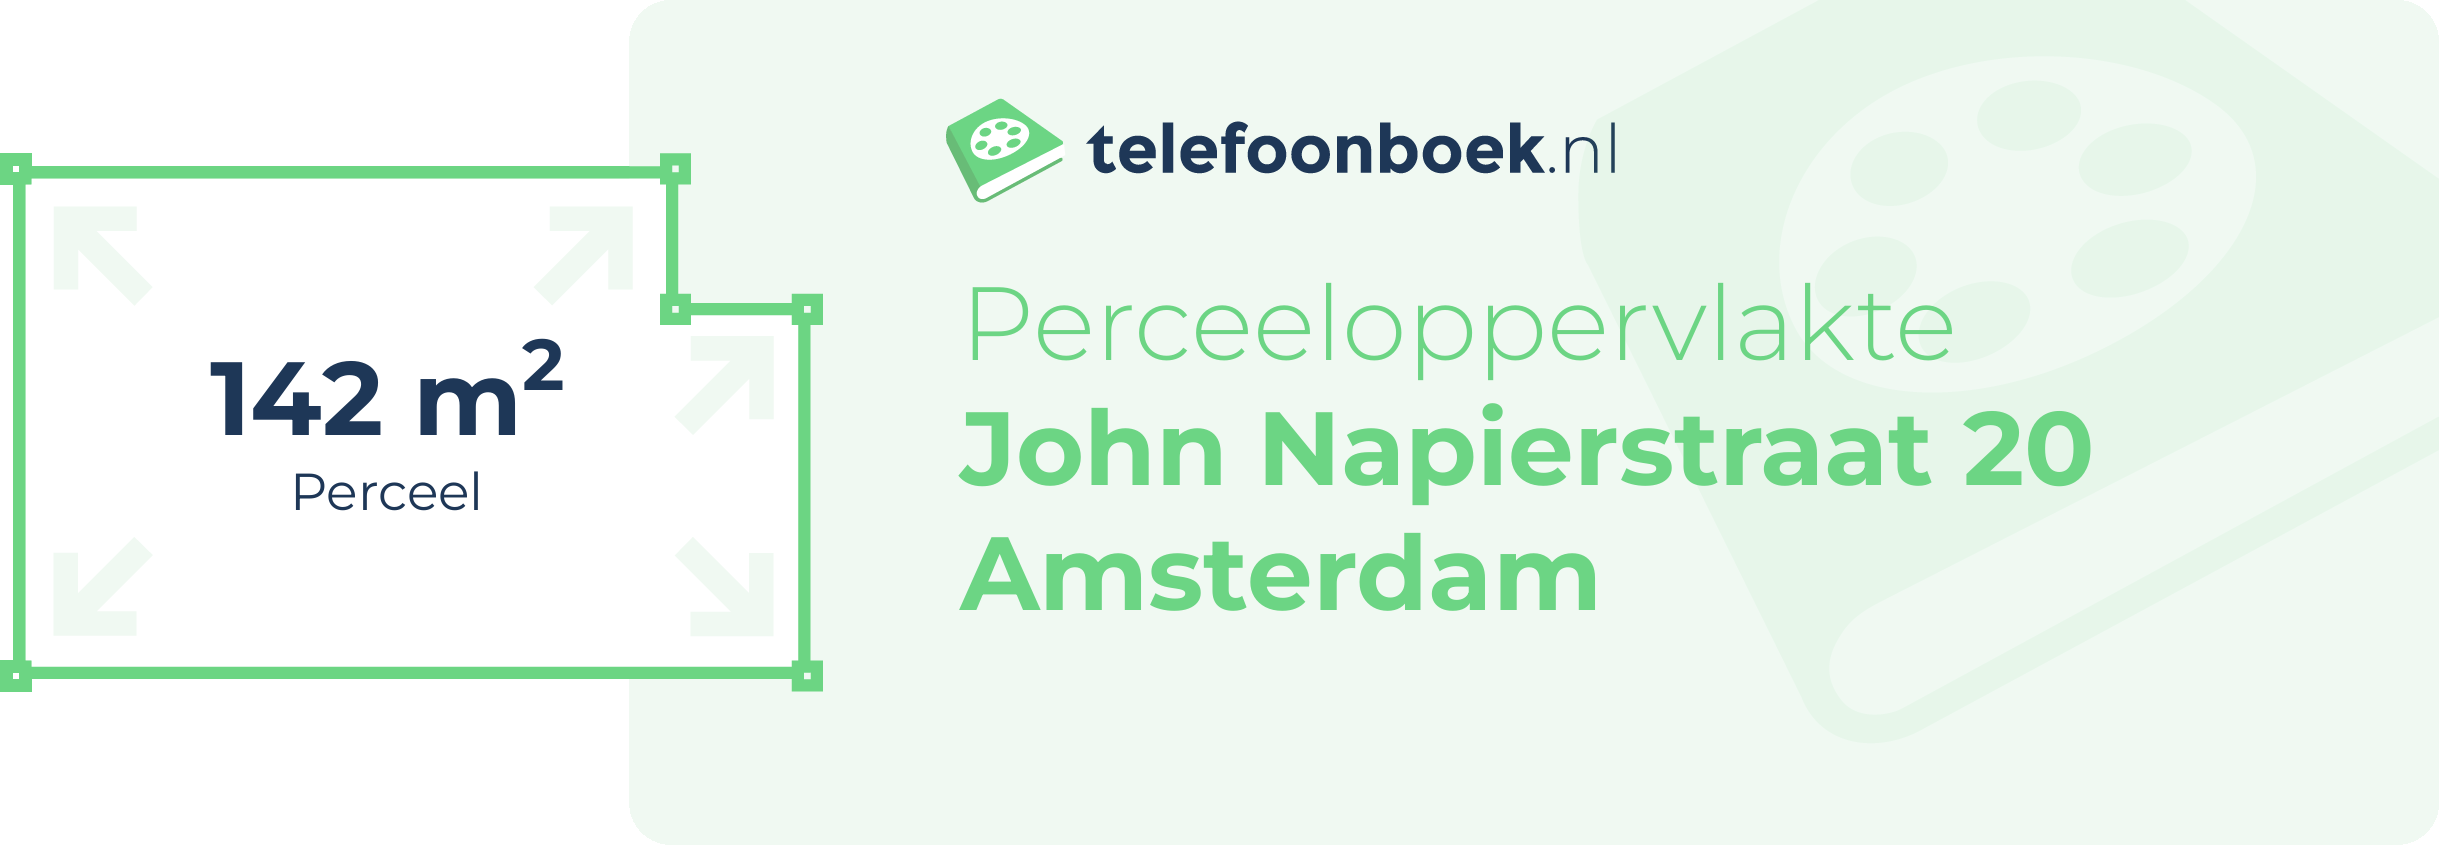 Perceeloppervlakte John Napierstraat 20 Amsterdam